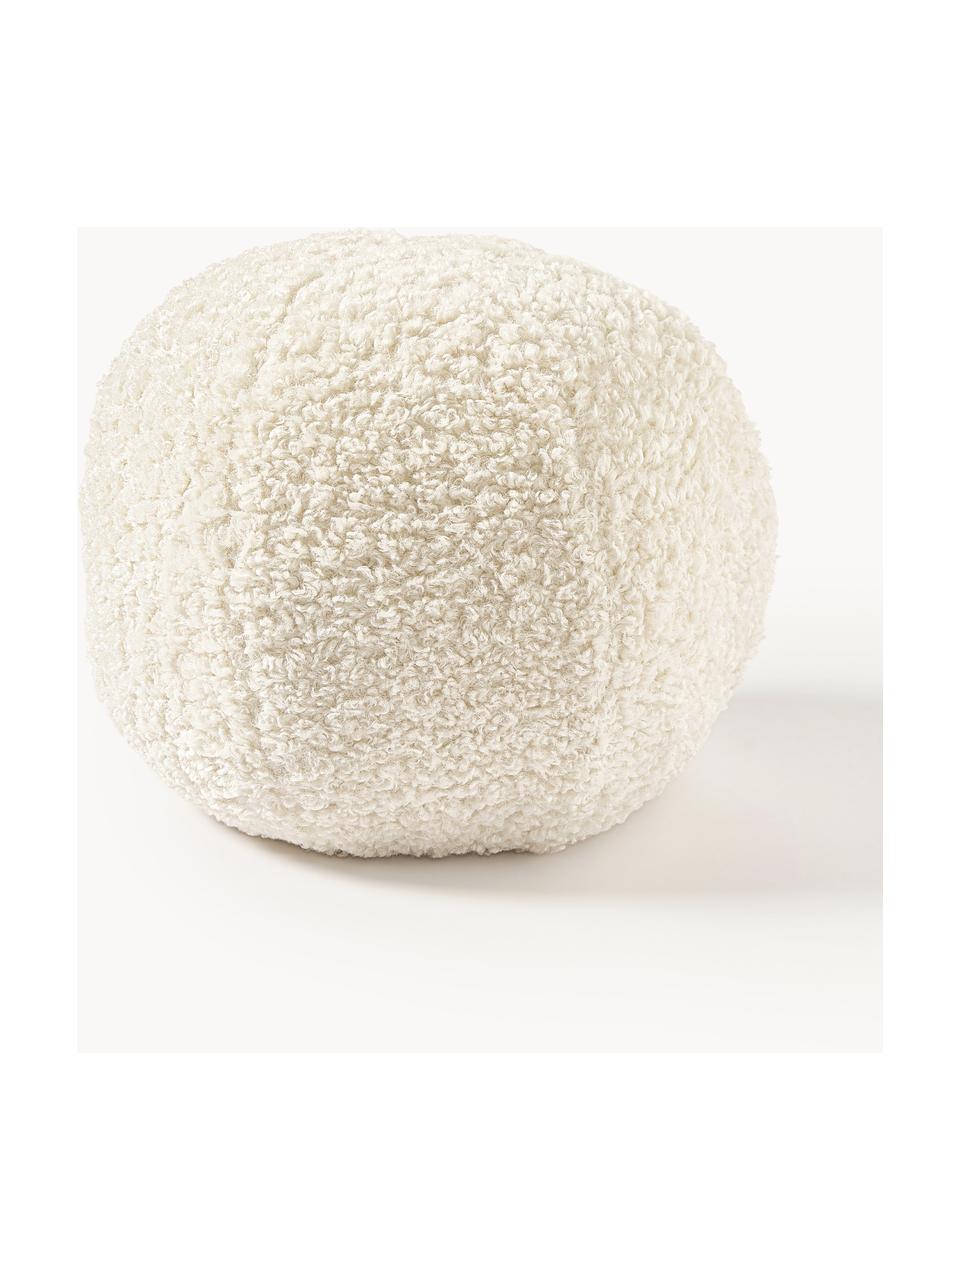 Cuscino decorativo rotondo in teddy Dotty, Rivestimento: 100% poliestere (teddy), Bianco crema, Ø 30 cm